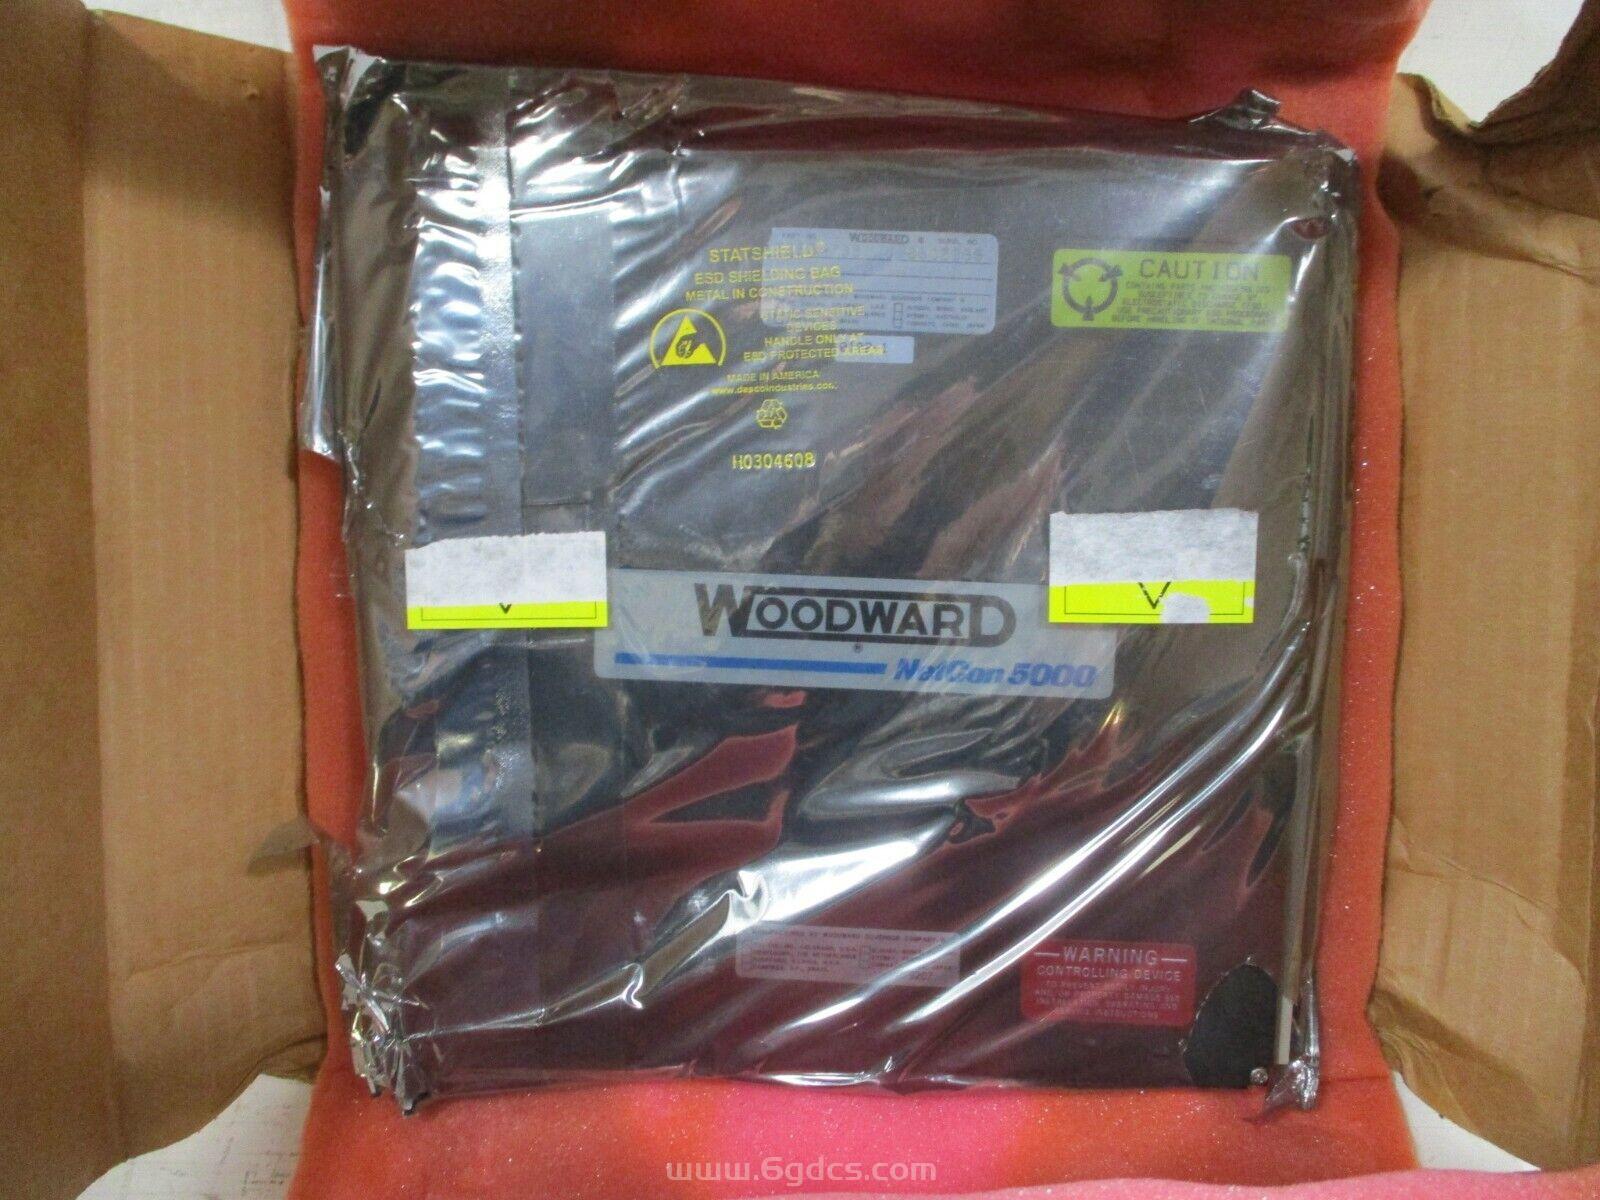 (5466-1047 电源模块)全新原装 Woodward 伍德沃德的模块 进口现货供应